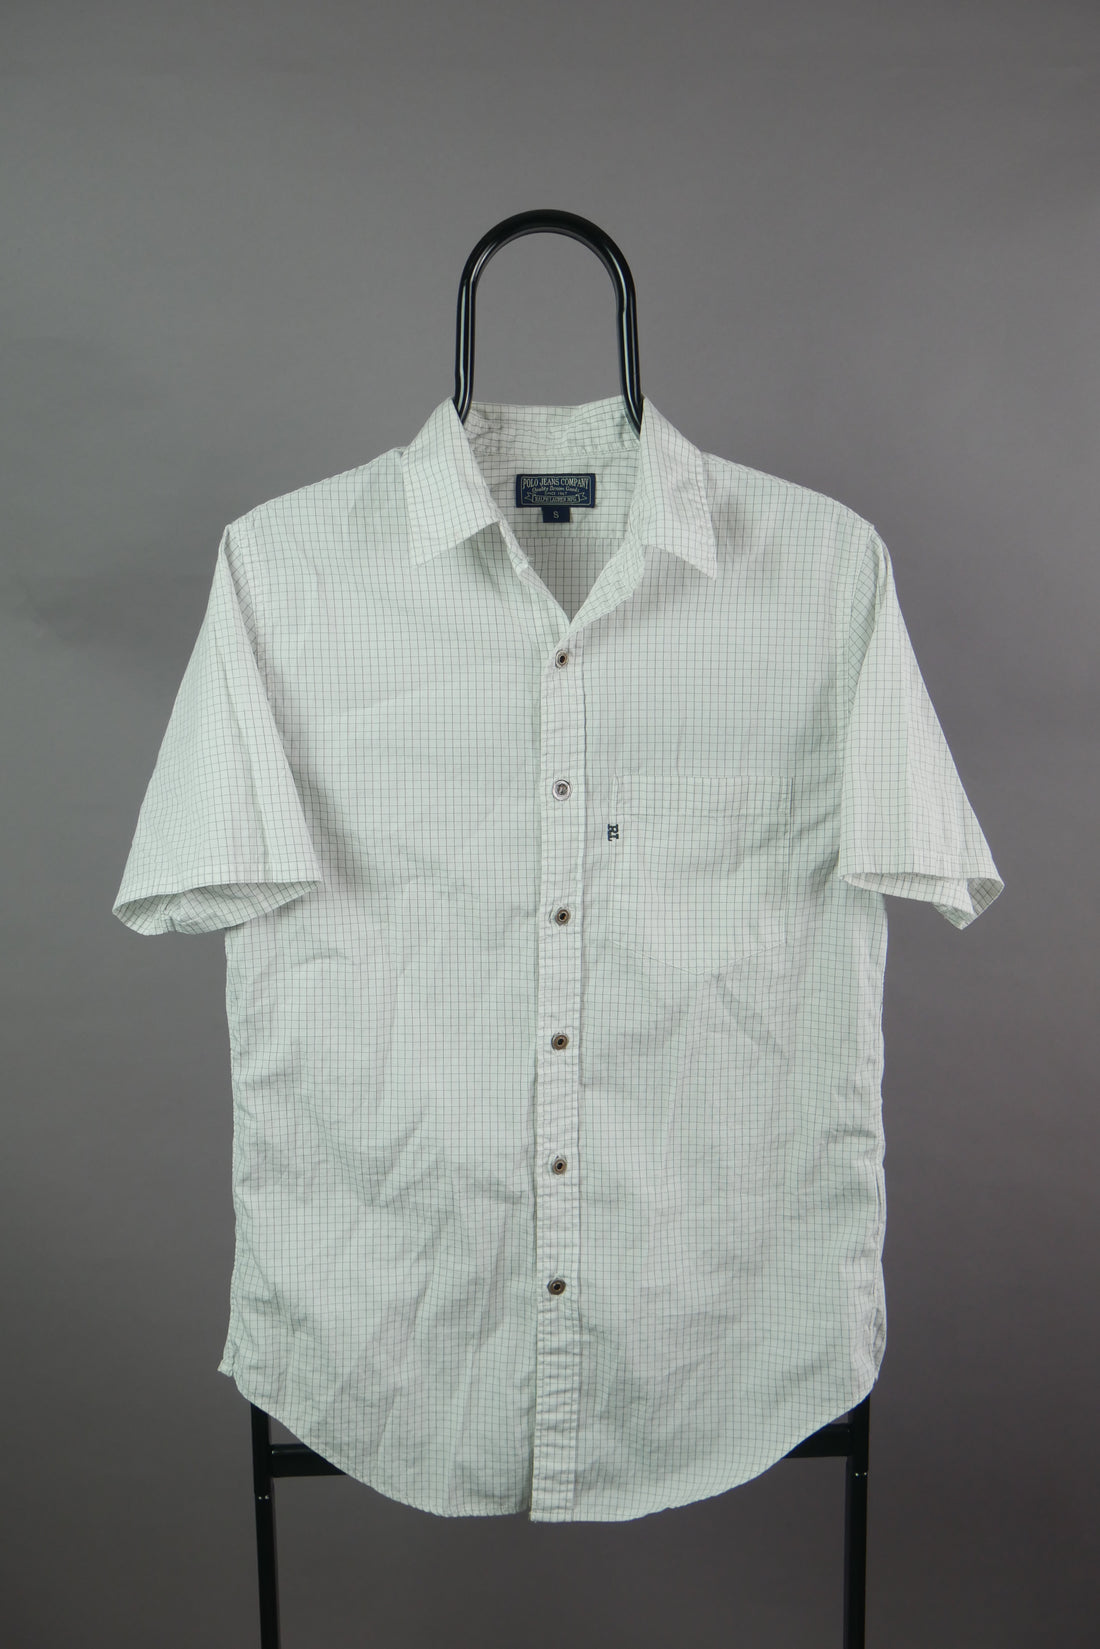 The Ralph Lauren Grid Short Sleeve Shirt (S)